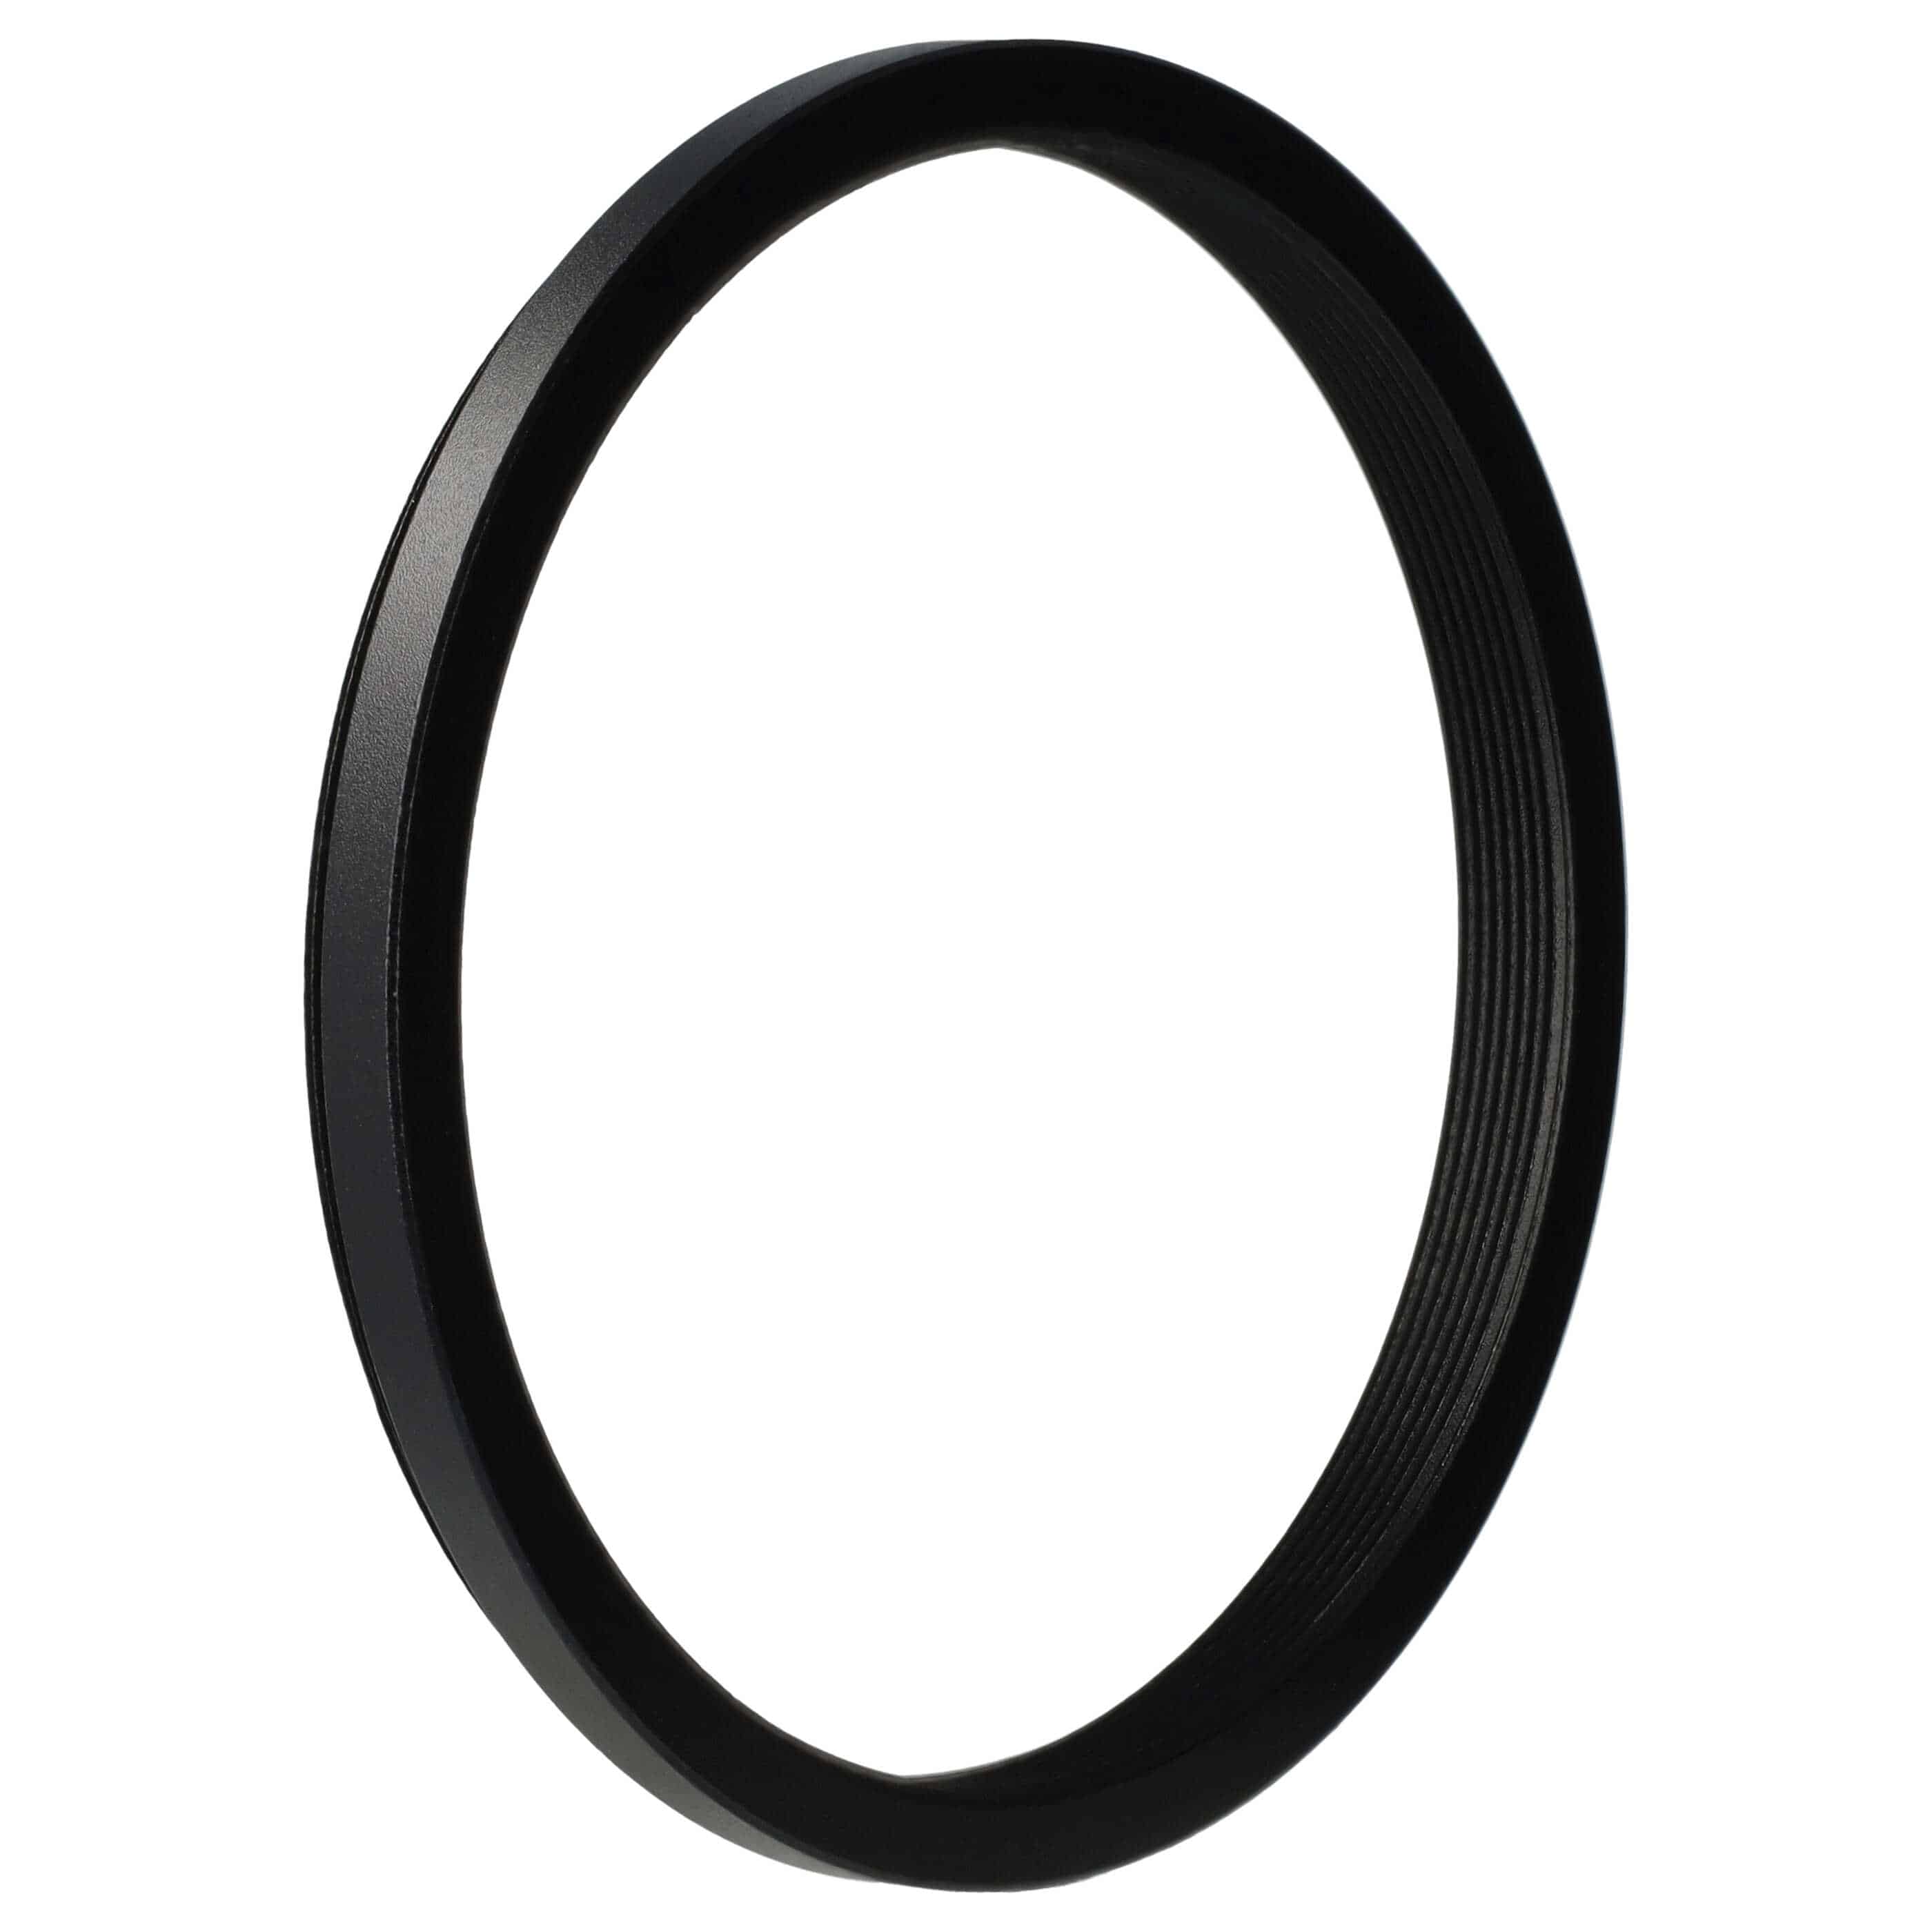 Step-Down-Ring Adapter von 67 mm auf 62 mm passend für Kamera Objektiv - Filteradapter, Metall, schwarz